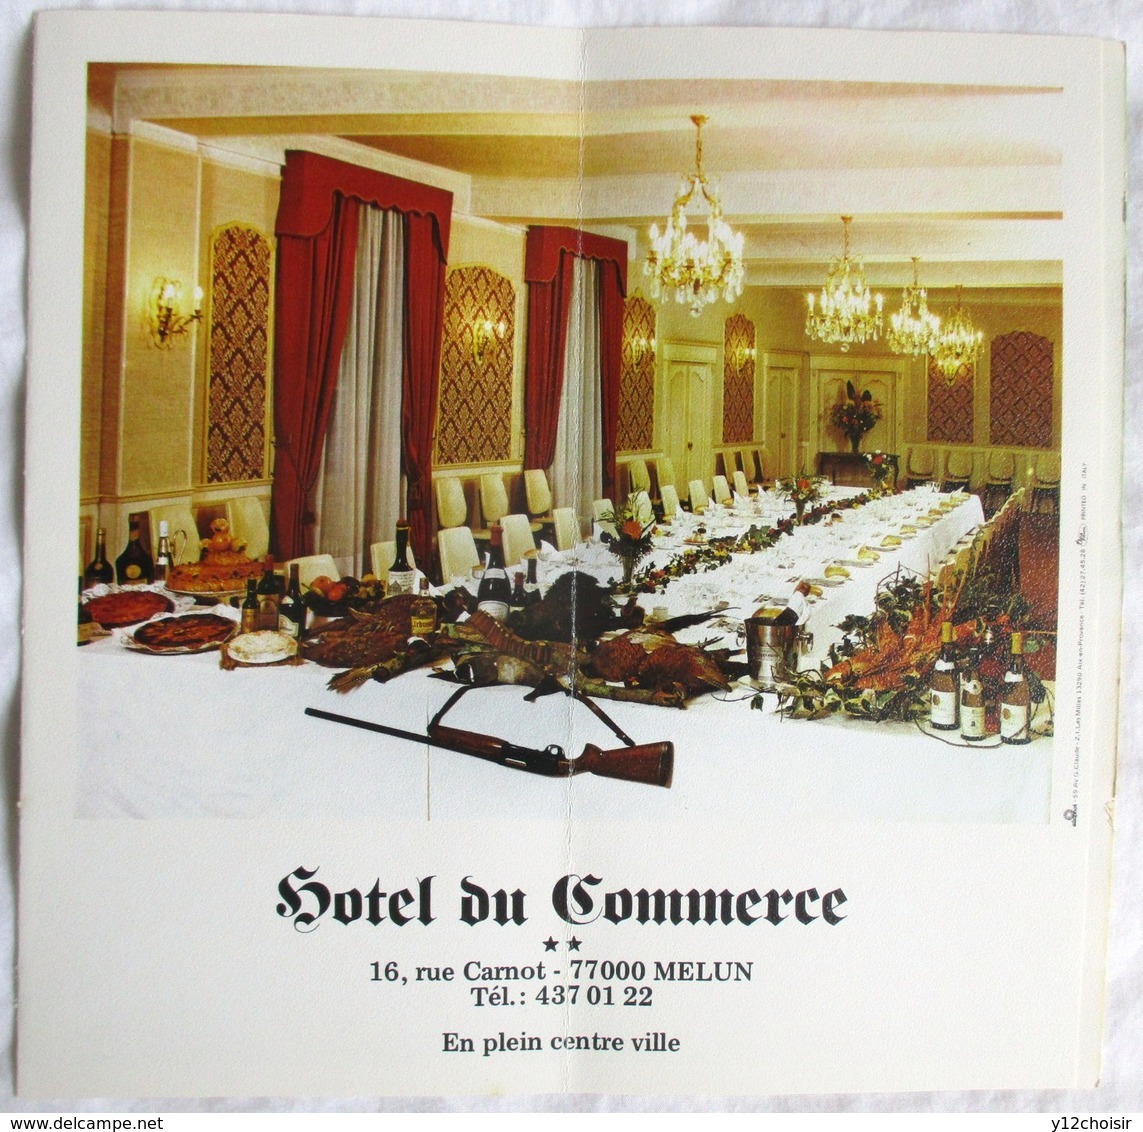 DEPLIANT 1985 HOTEL RESTAURANT DU COMMERCE MELUN 16 RUE CARNOT SEINE ET MARNE - Publicités